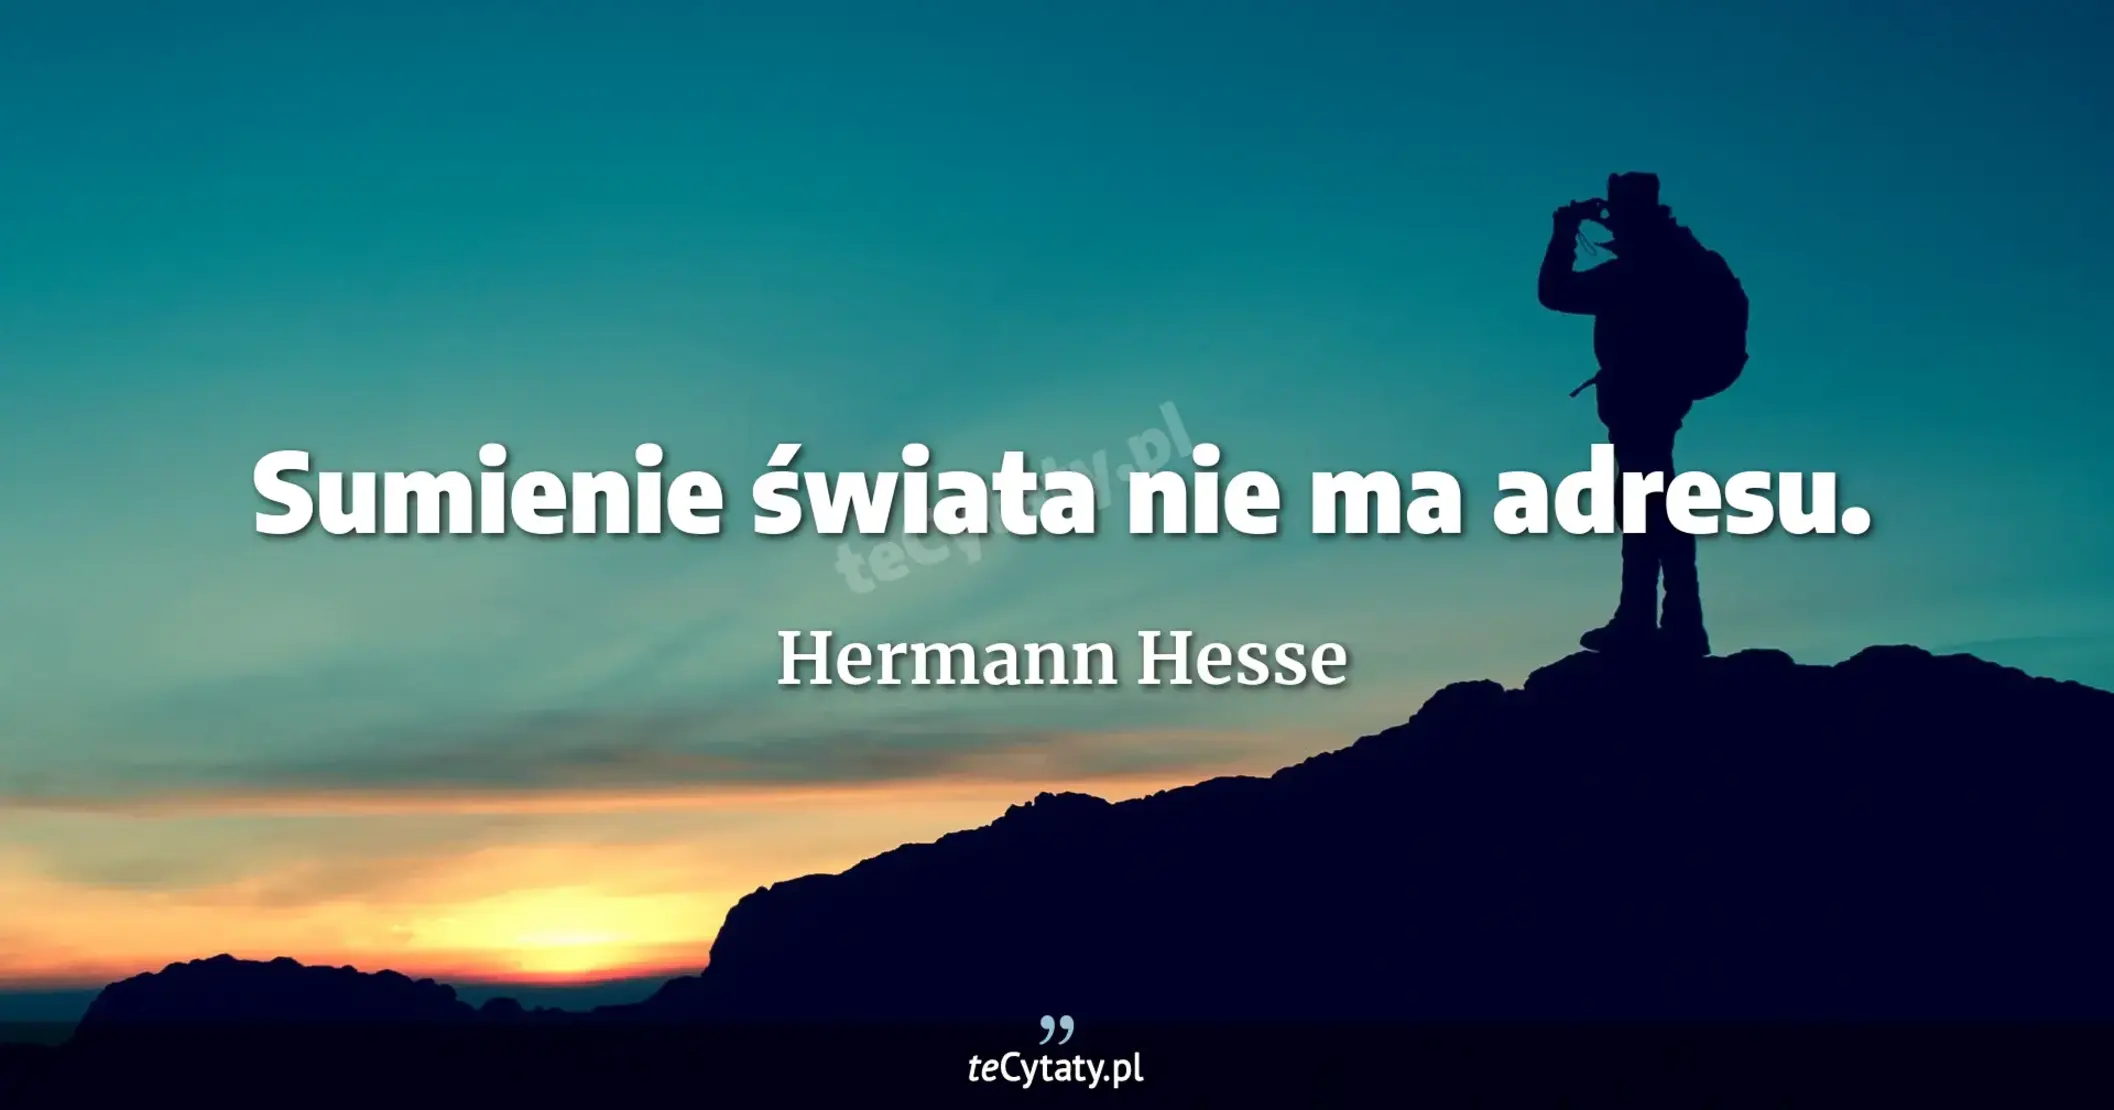 Sumienie świata nie ma adresu. - Hermann Hesse